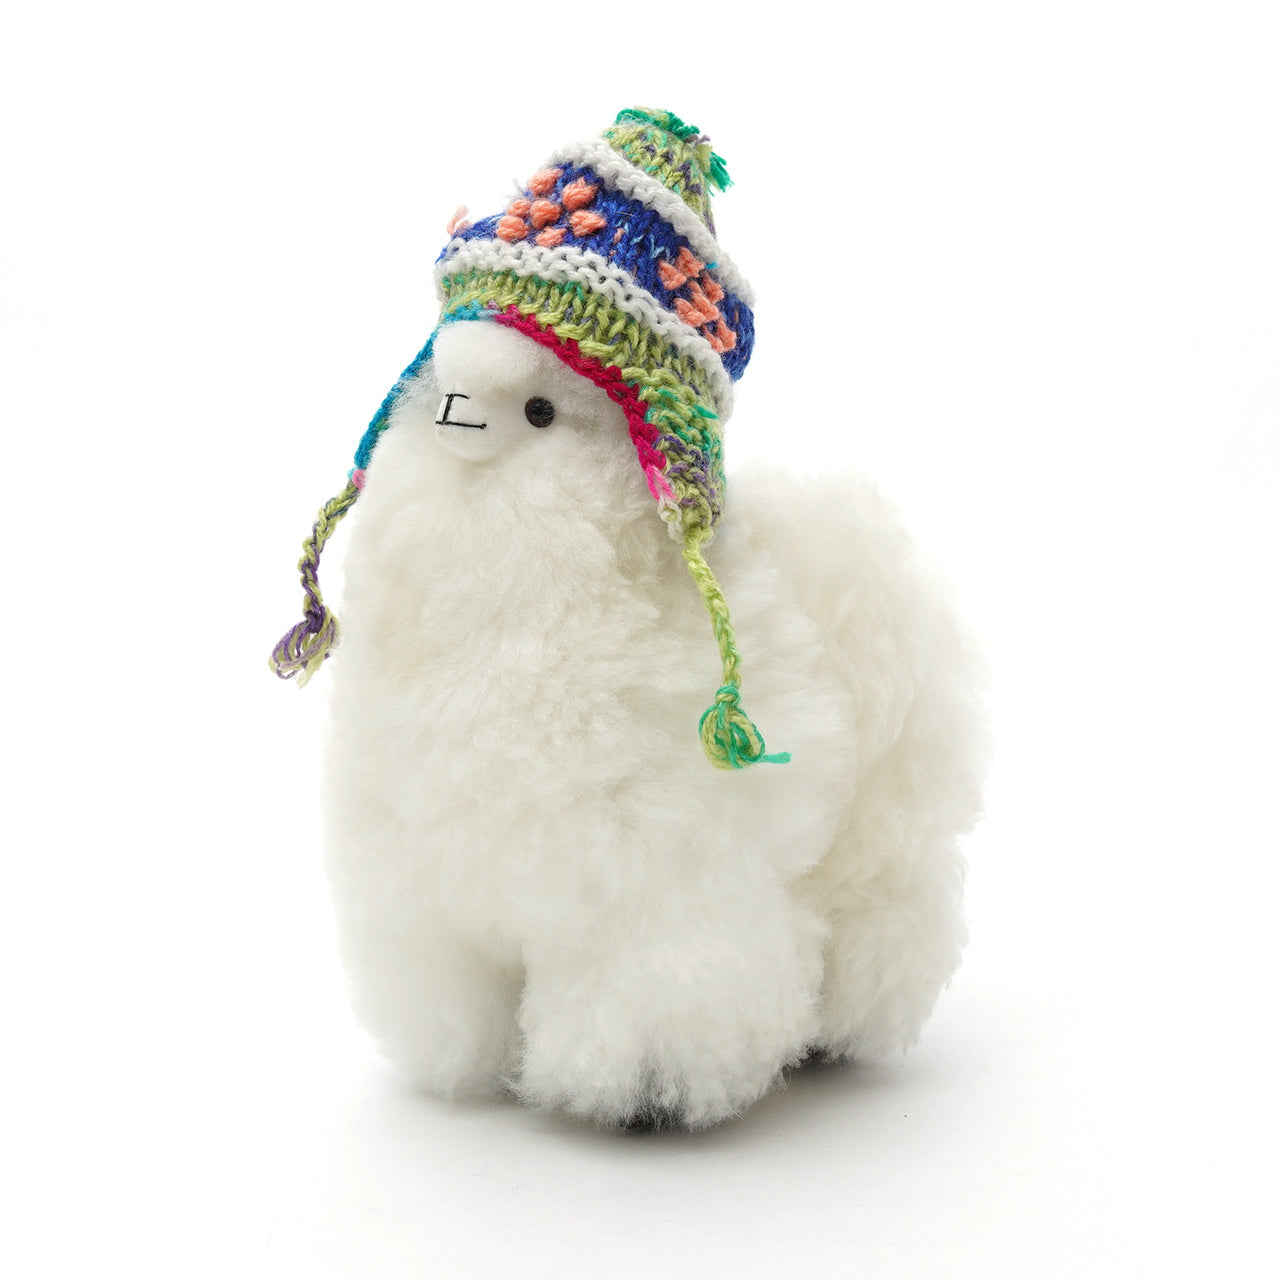 DEL SOL デルソル ペルー アルパカ ぬいぐるみ Peru alpaca Doll 雑貨 プレゼント ギフト